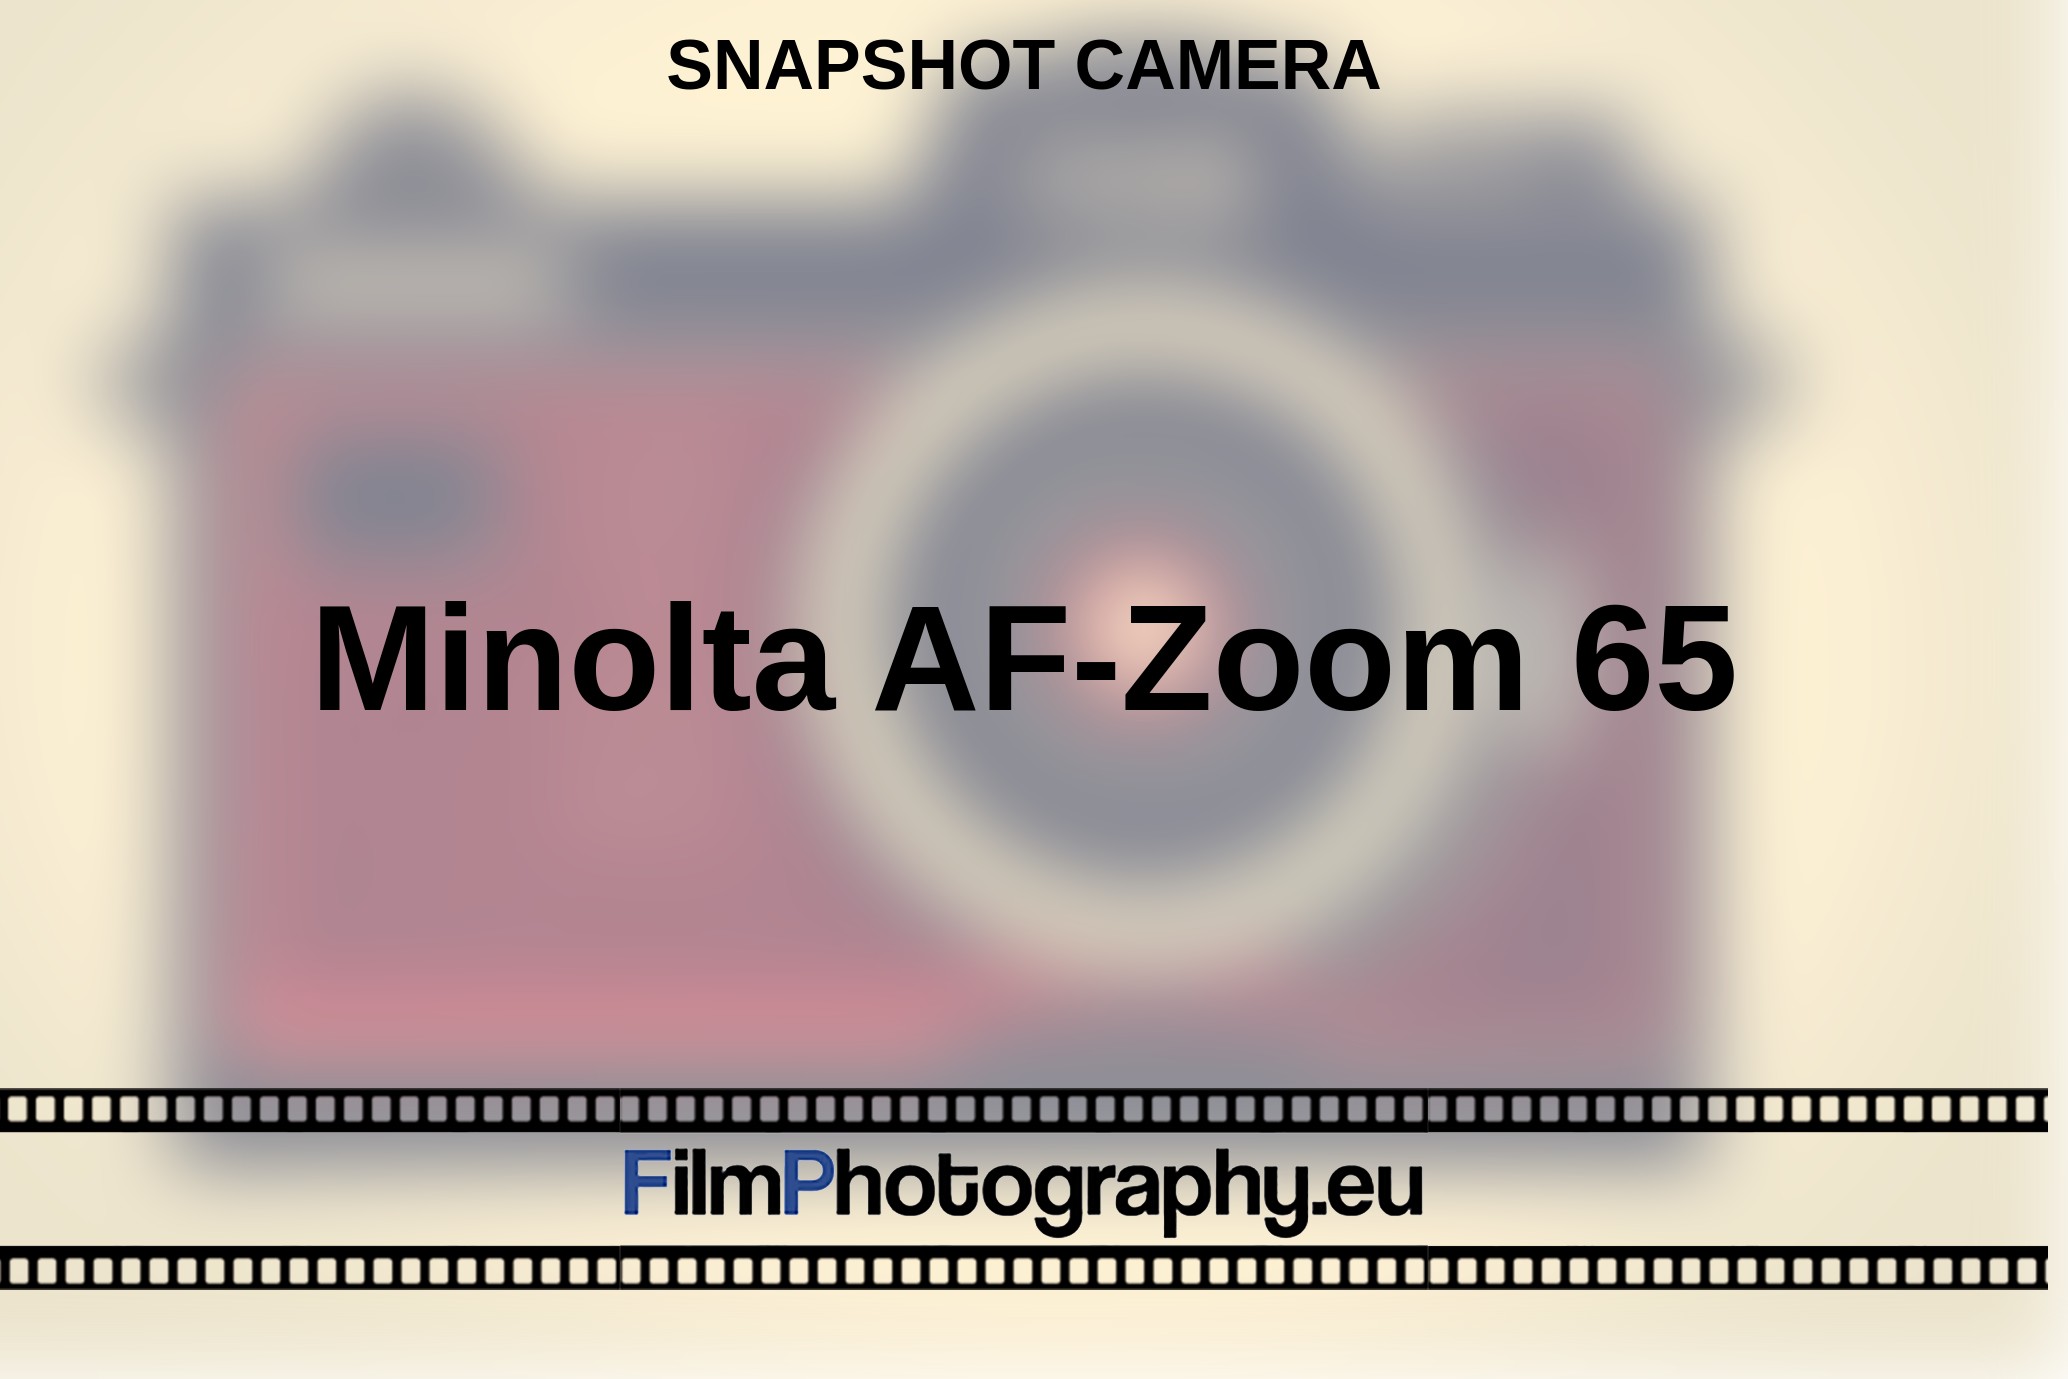 Minolta-AF-Zoom-65-snapshot-camera-bnv.jpg